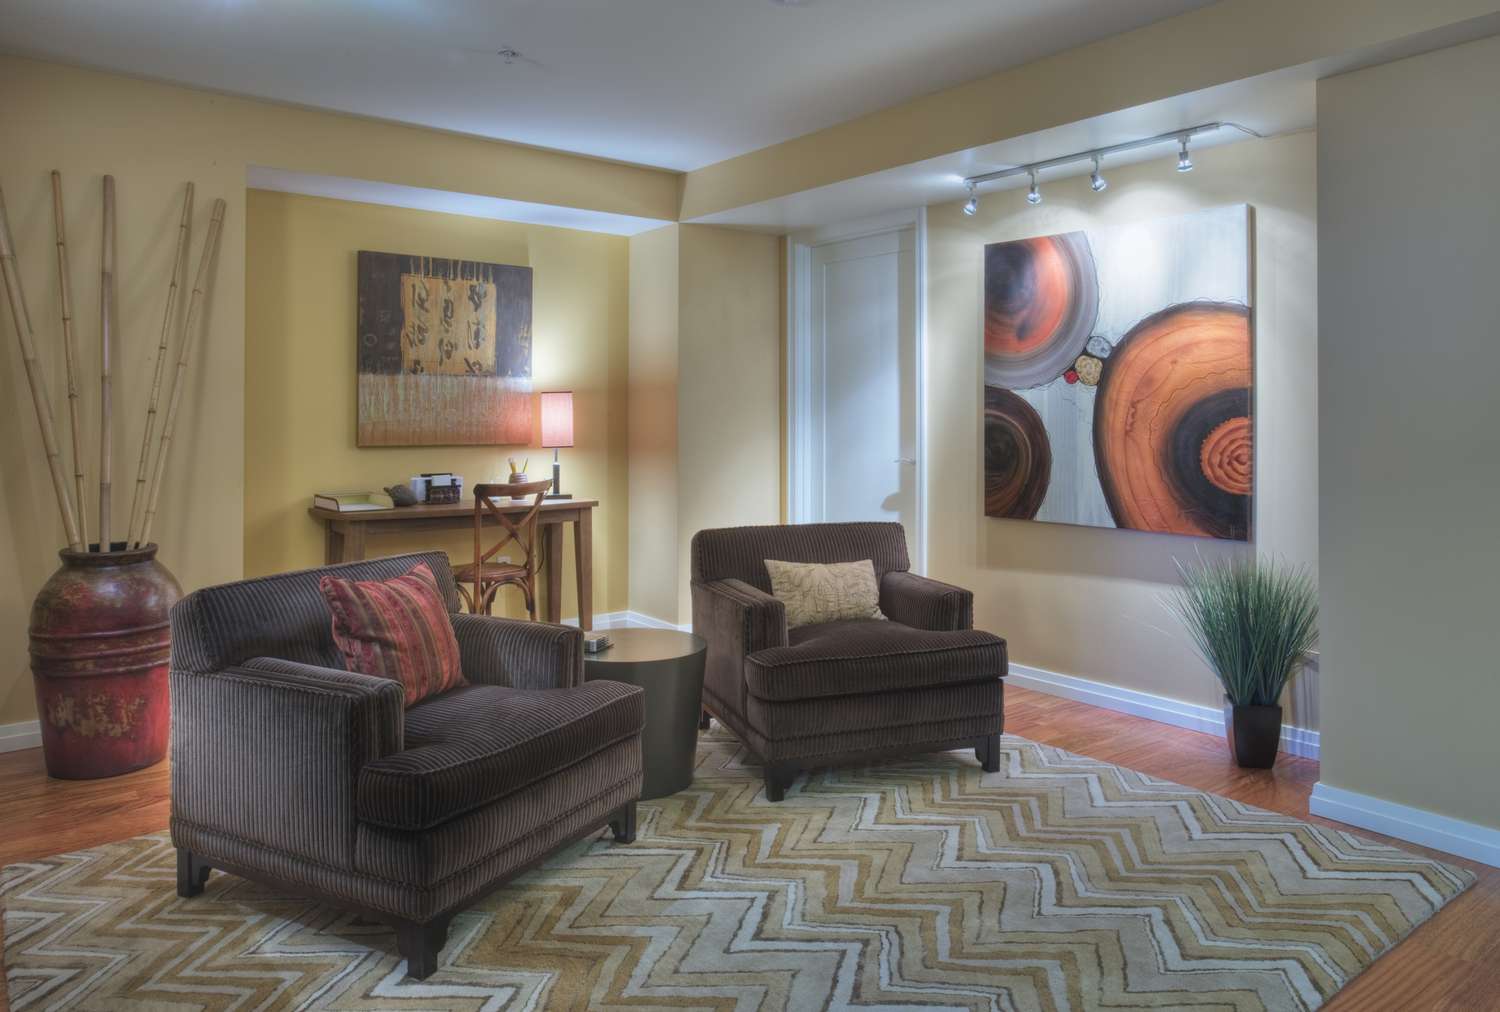 Salon avec meubles bruns, murs neutres, et deux peintures abstraites